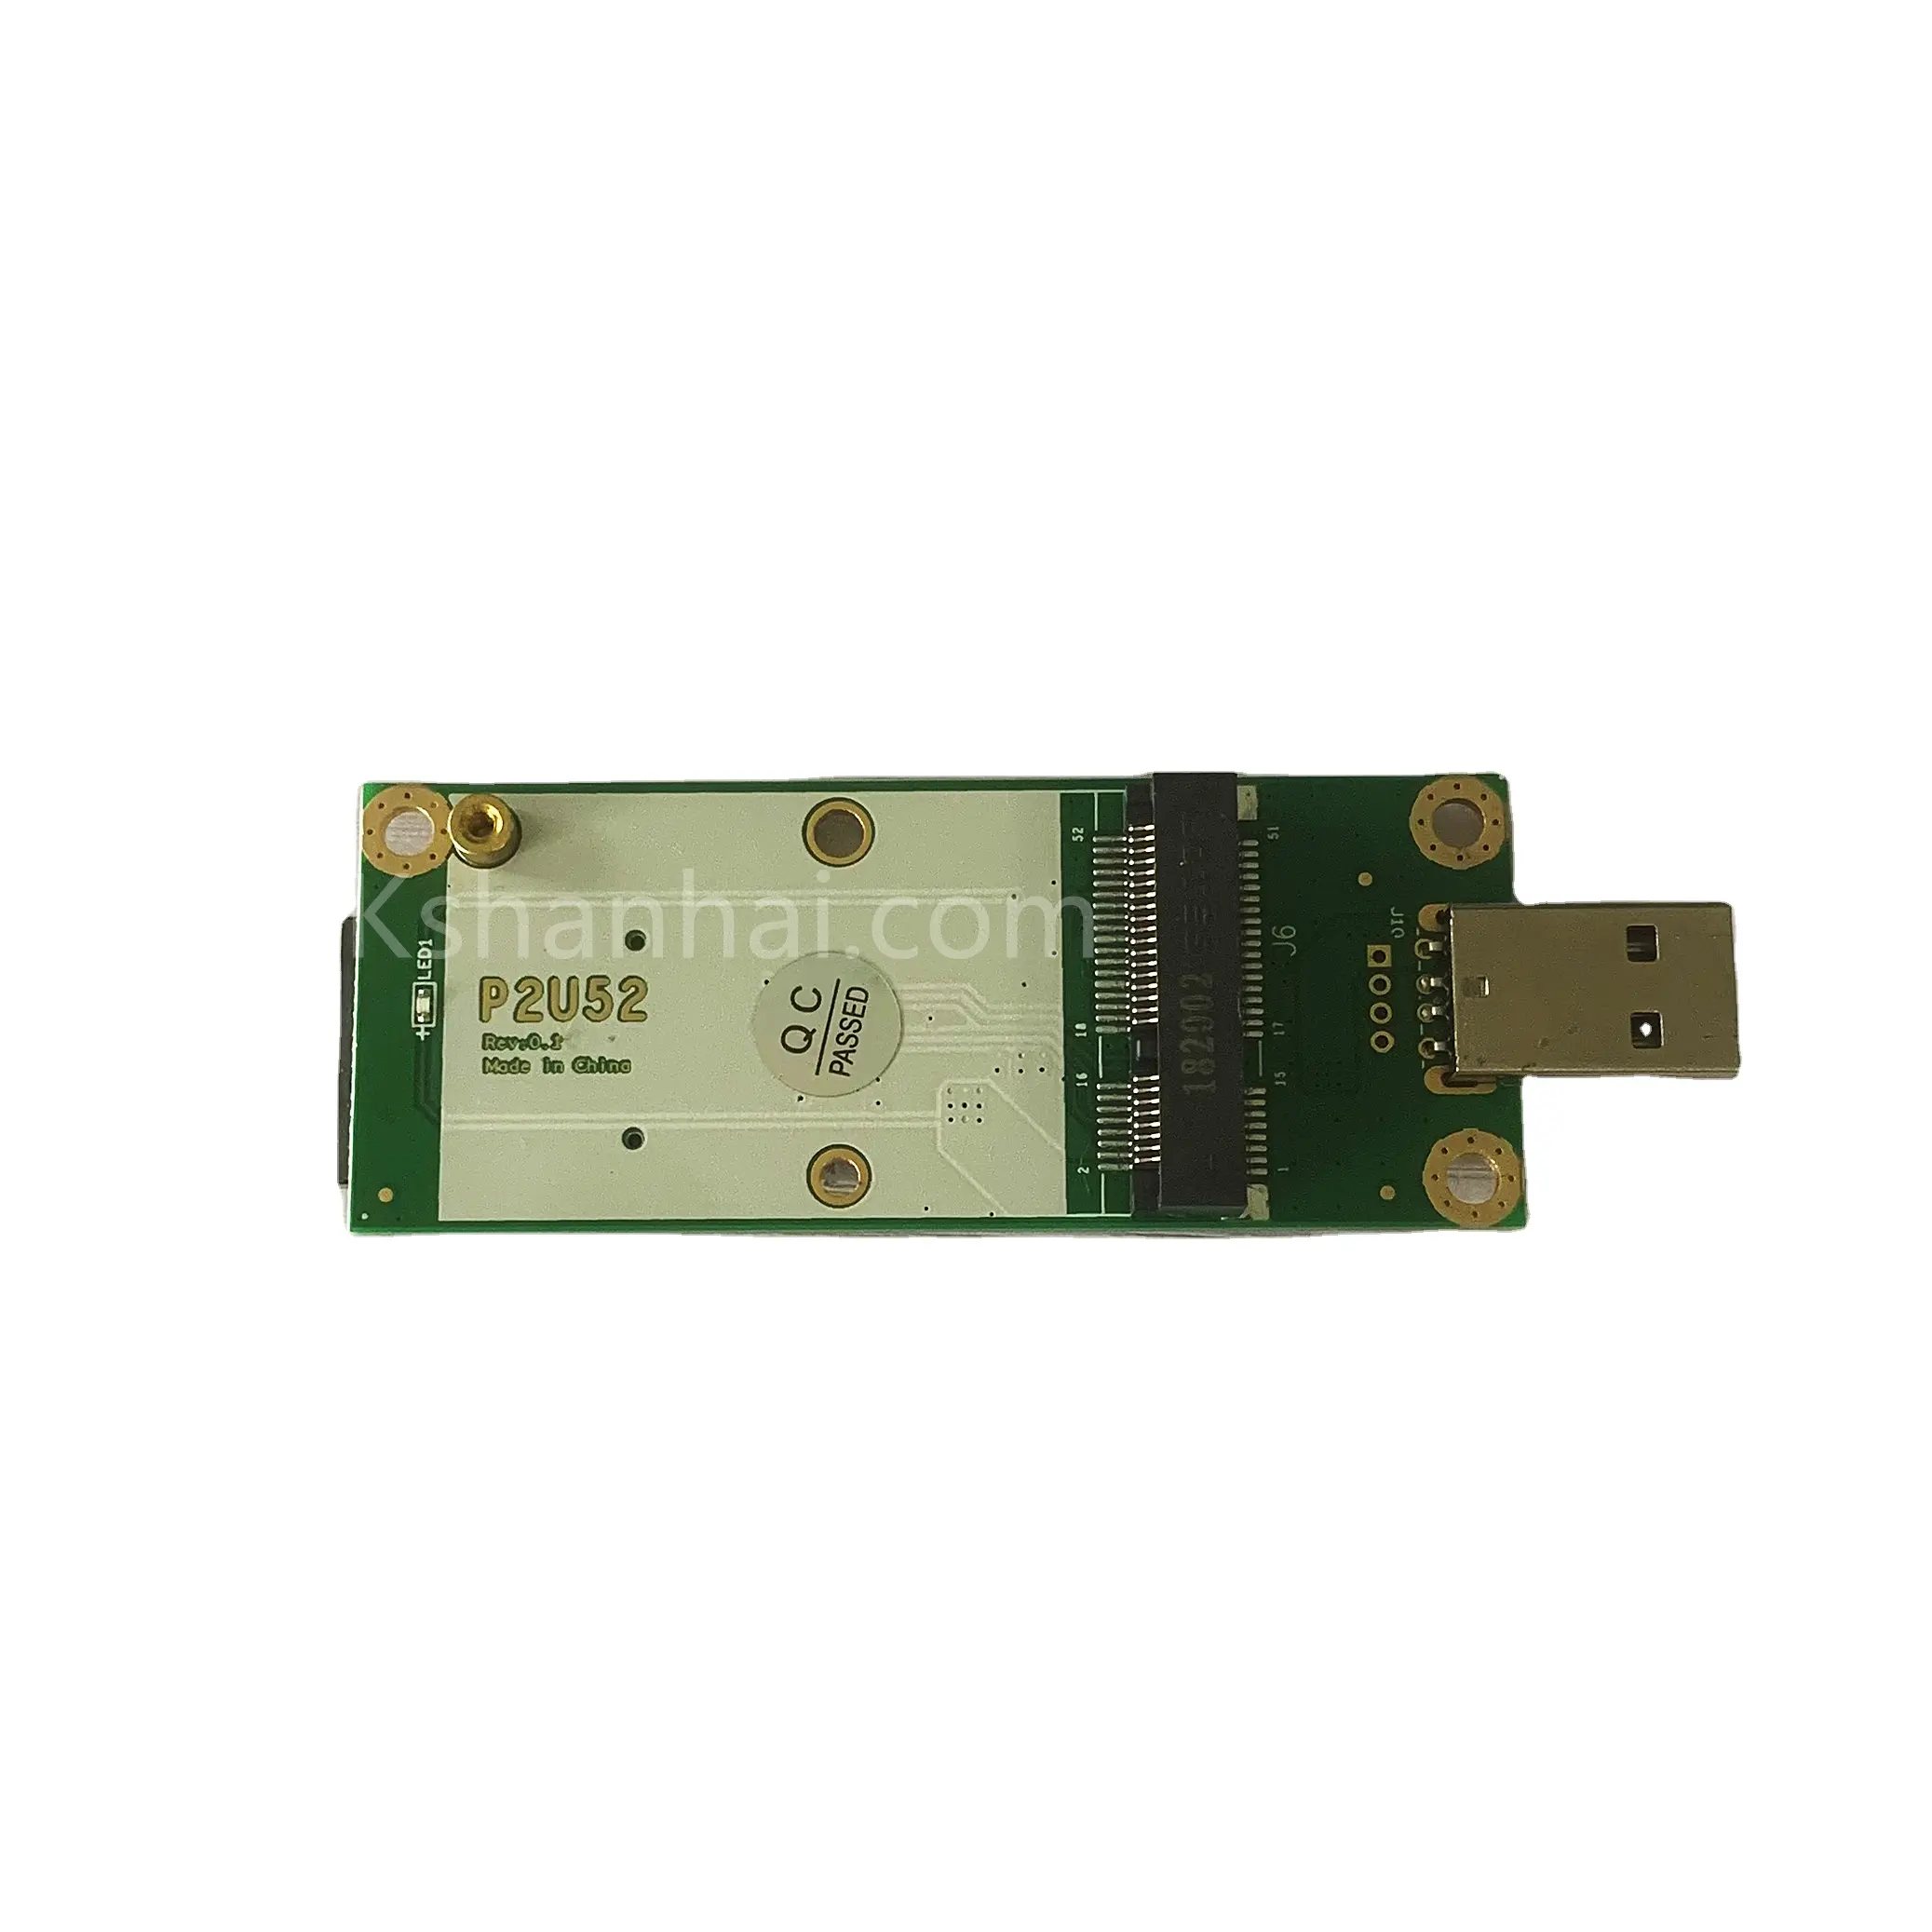 บอร์ดทดสอบ USB ขนาดเล็ก,บอร์ดอะแดปเตอร์ PCB เชื่อมต่อ PCIE อะแดปเตอร์ USB 3G 4G LTE โมดูล WiFi